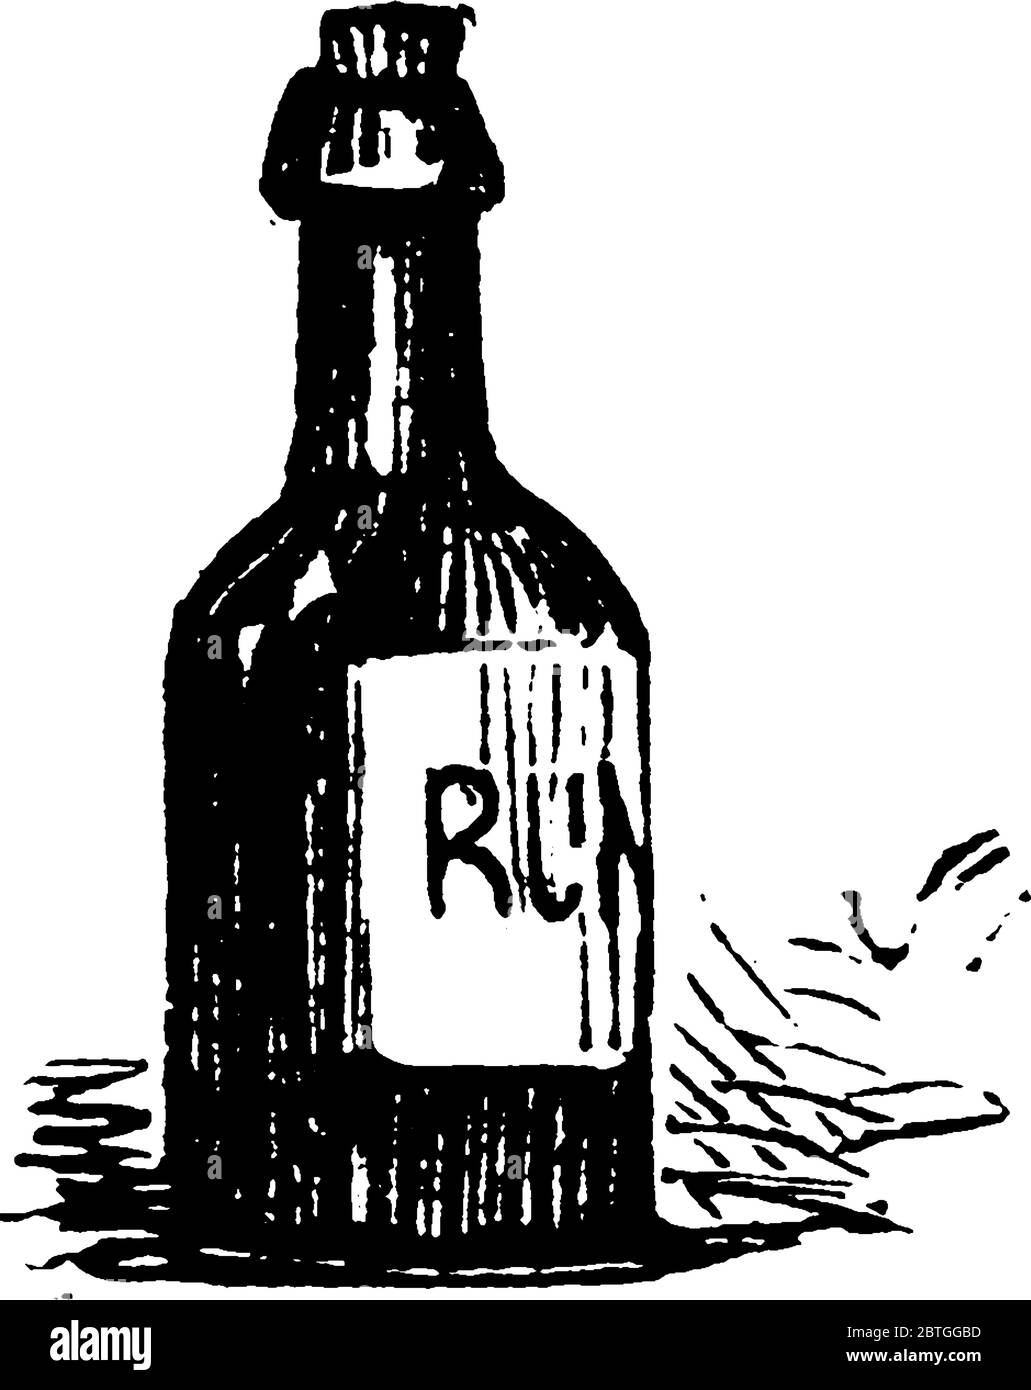 Flasche Rum, ist es ein destilliertes alkoholisches Getränk aus Zuckerrohr Nebenprodukte., Vintage-Linie Zeichnung oder Gravur Illustration. Stock Vektor